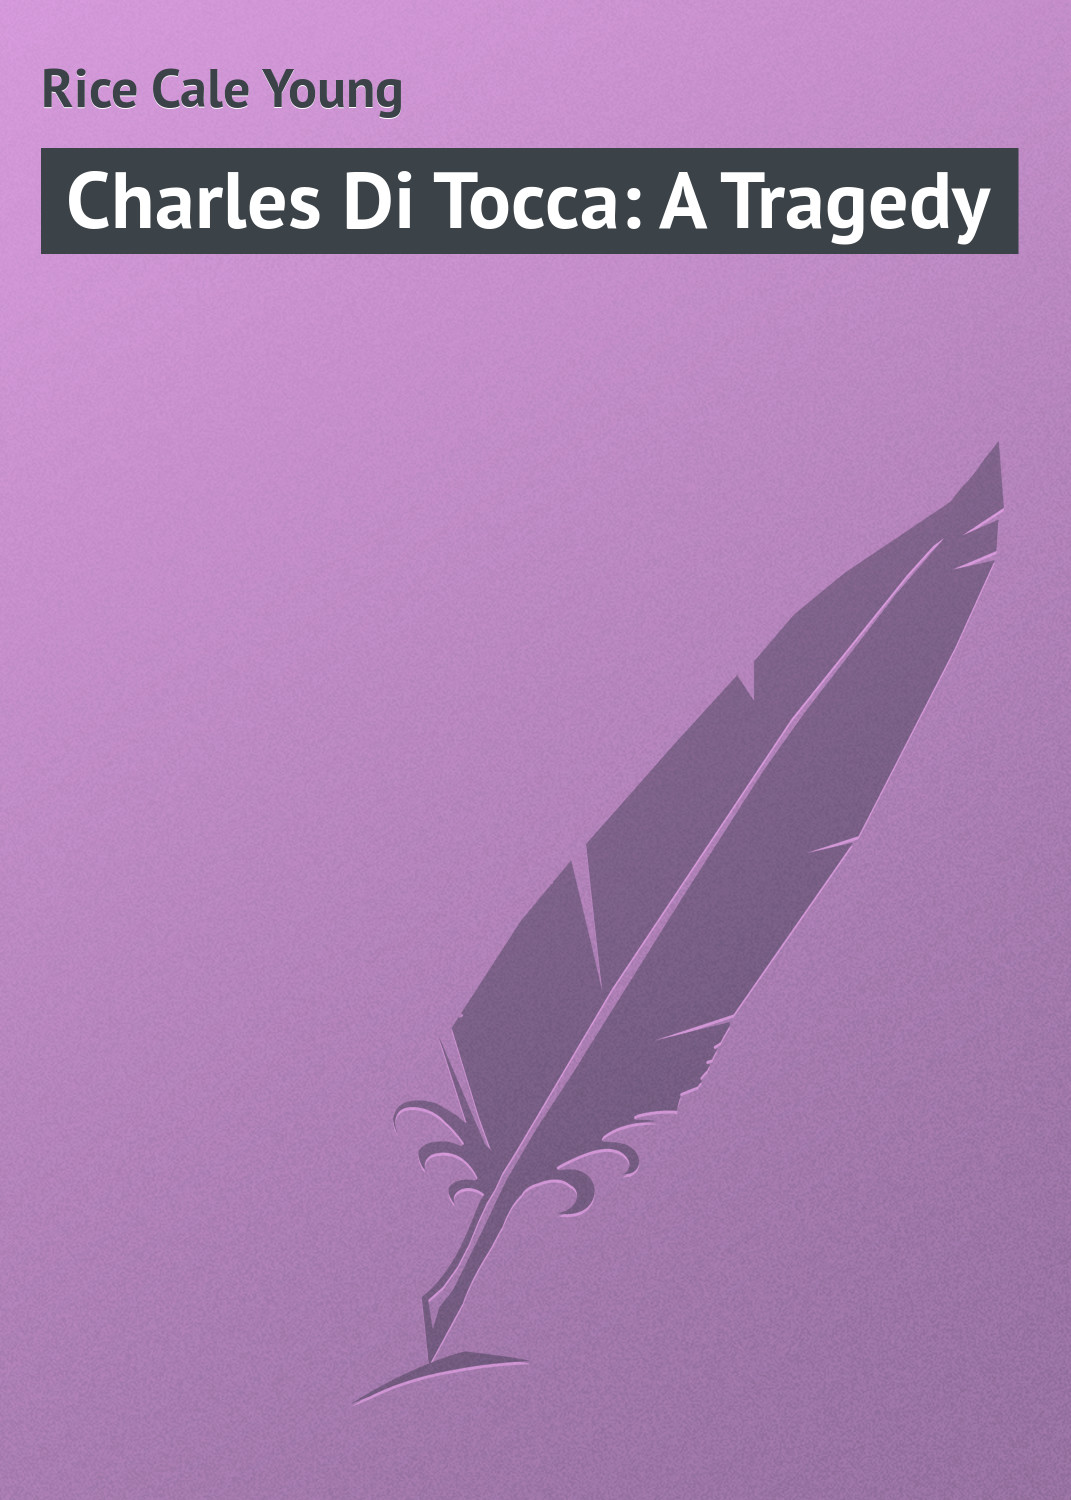 Книга Charles Di Tocca: A Tragedy из серии , созданная Cale Rice, может относится к жанру Зарубежная классика, Зарубежная драматургия. Стоимость электронной книги Charles Di Tocca: A Tragedy с идентификатором 23148259 составляет 5.99 руб.